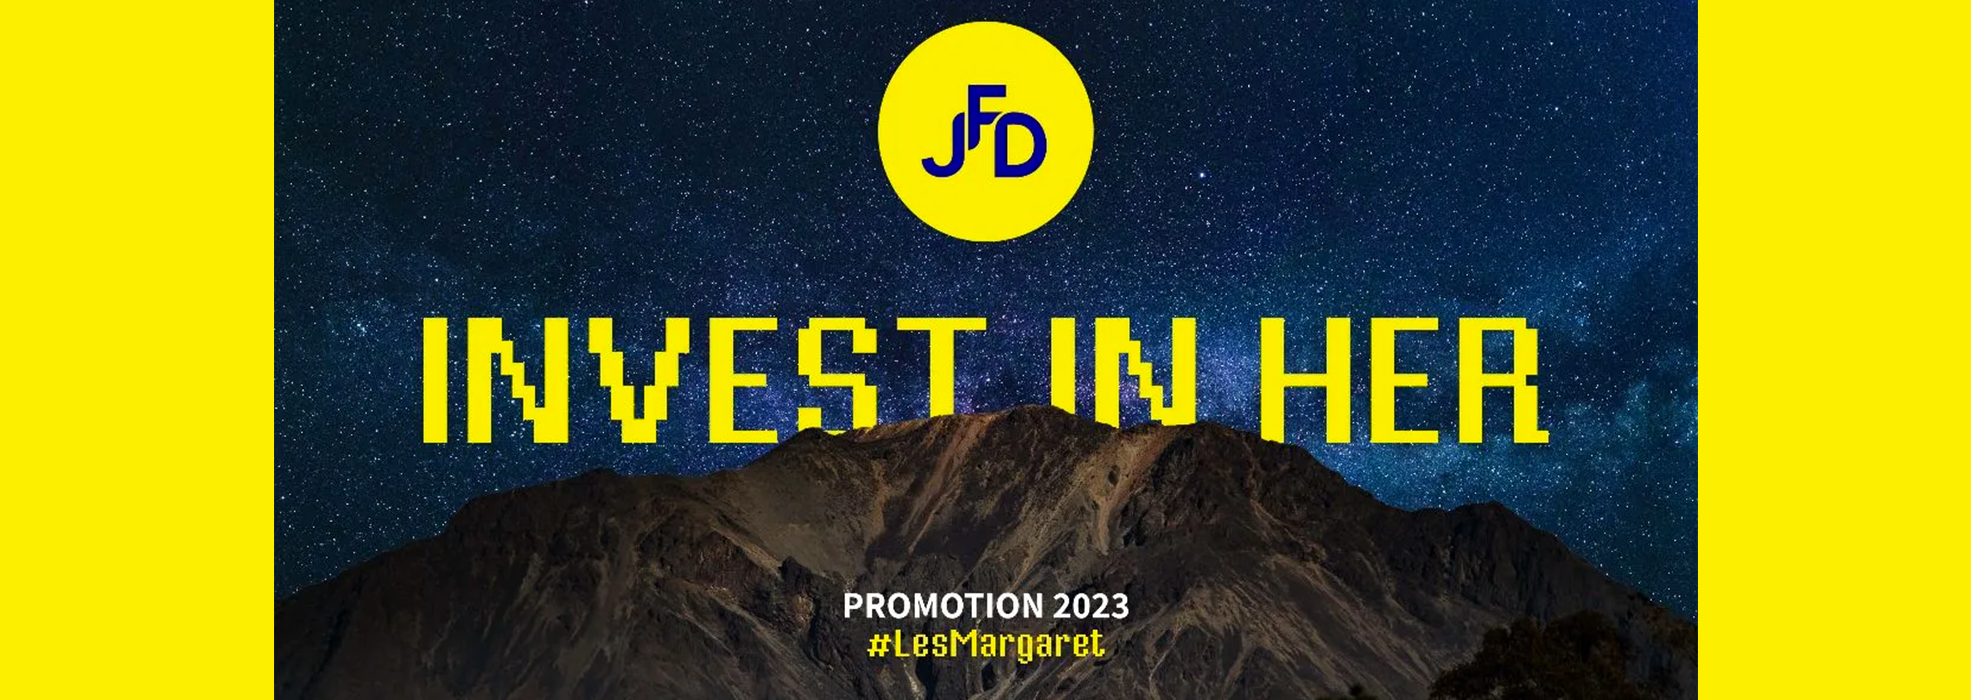 JFD dévoile les finalistes de la promotion 2023 « Invest in Her » du prix les Margaret